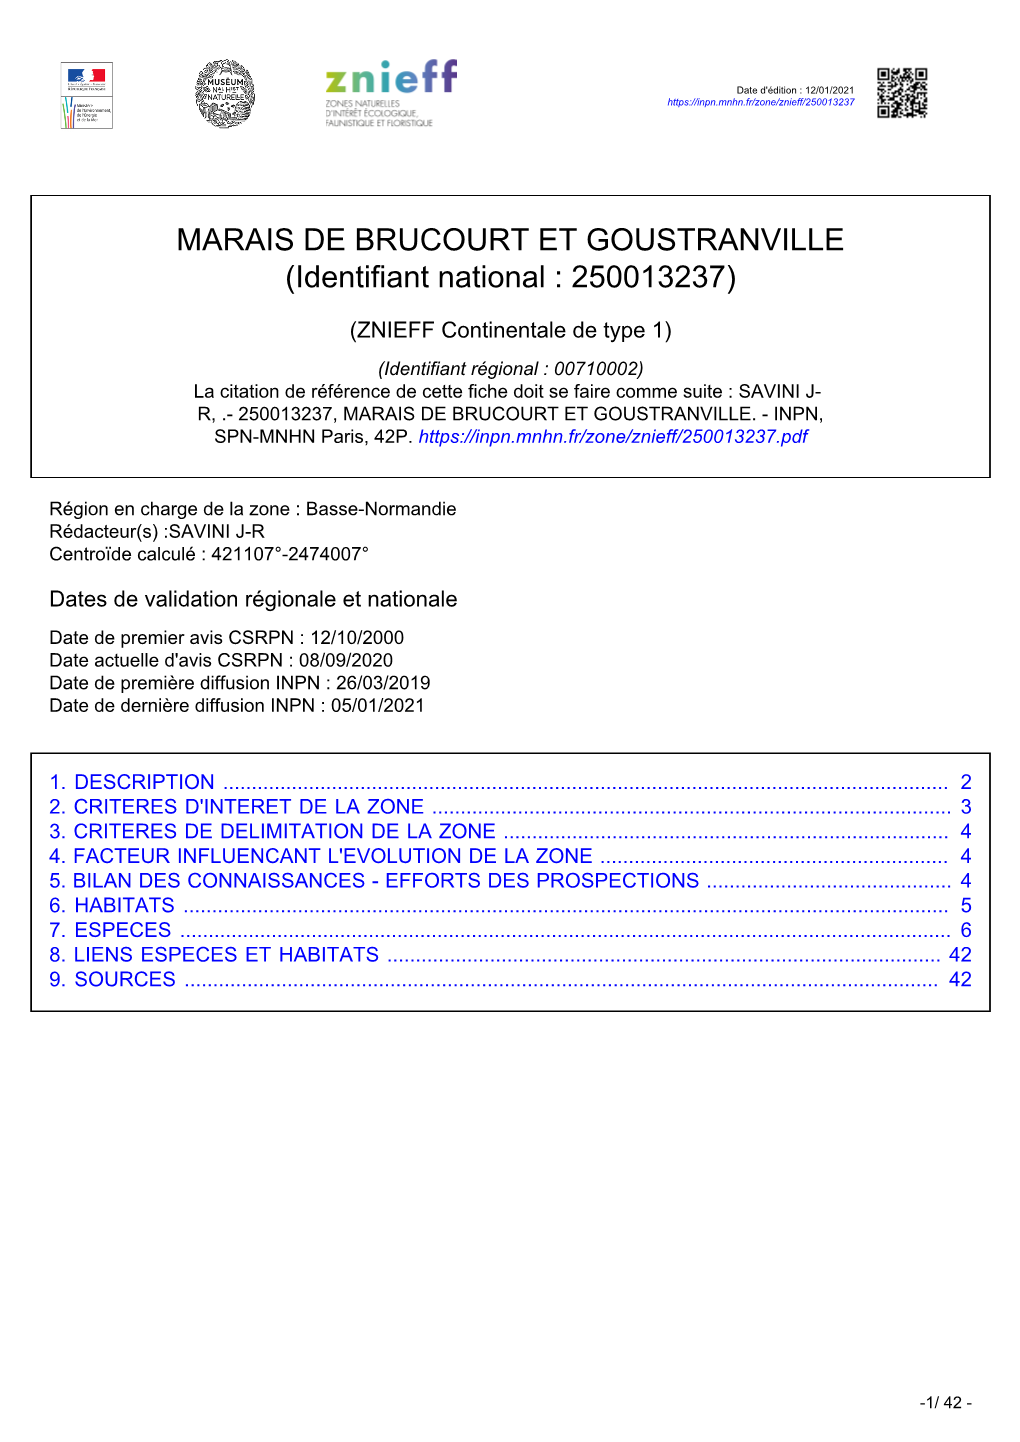 MARAIS DE BRUCOURT ET GOUSTRANVILLE (Identifiant National : 250013237)